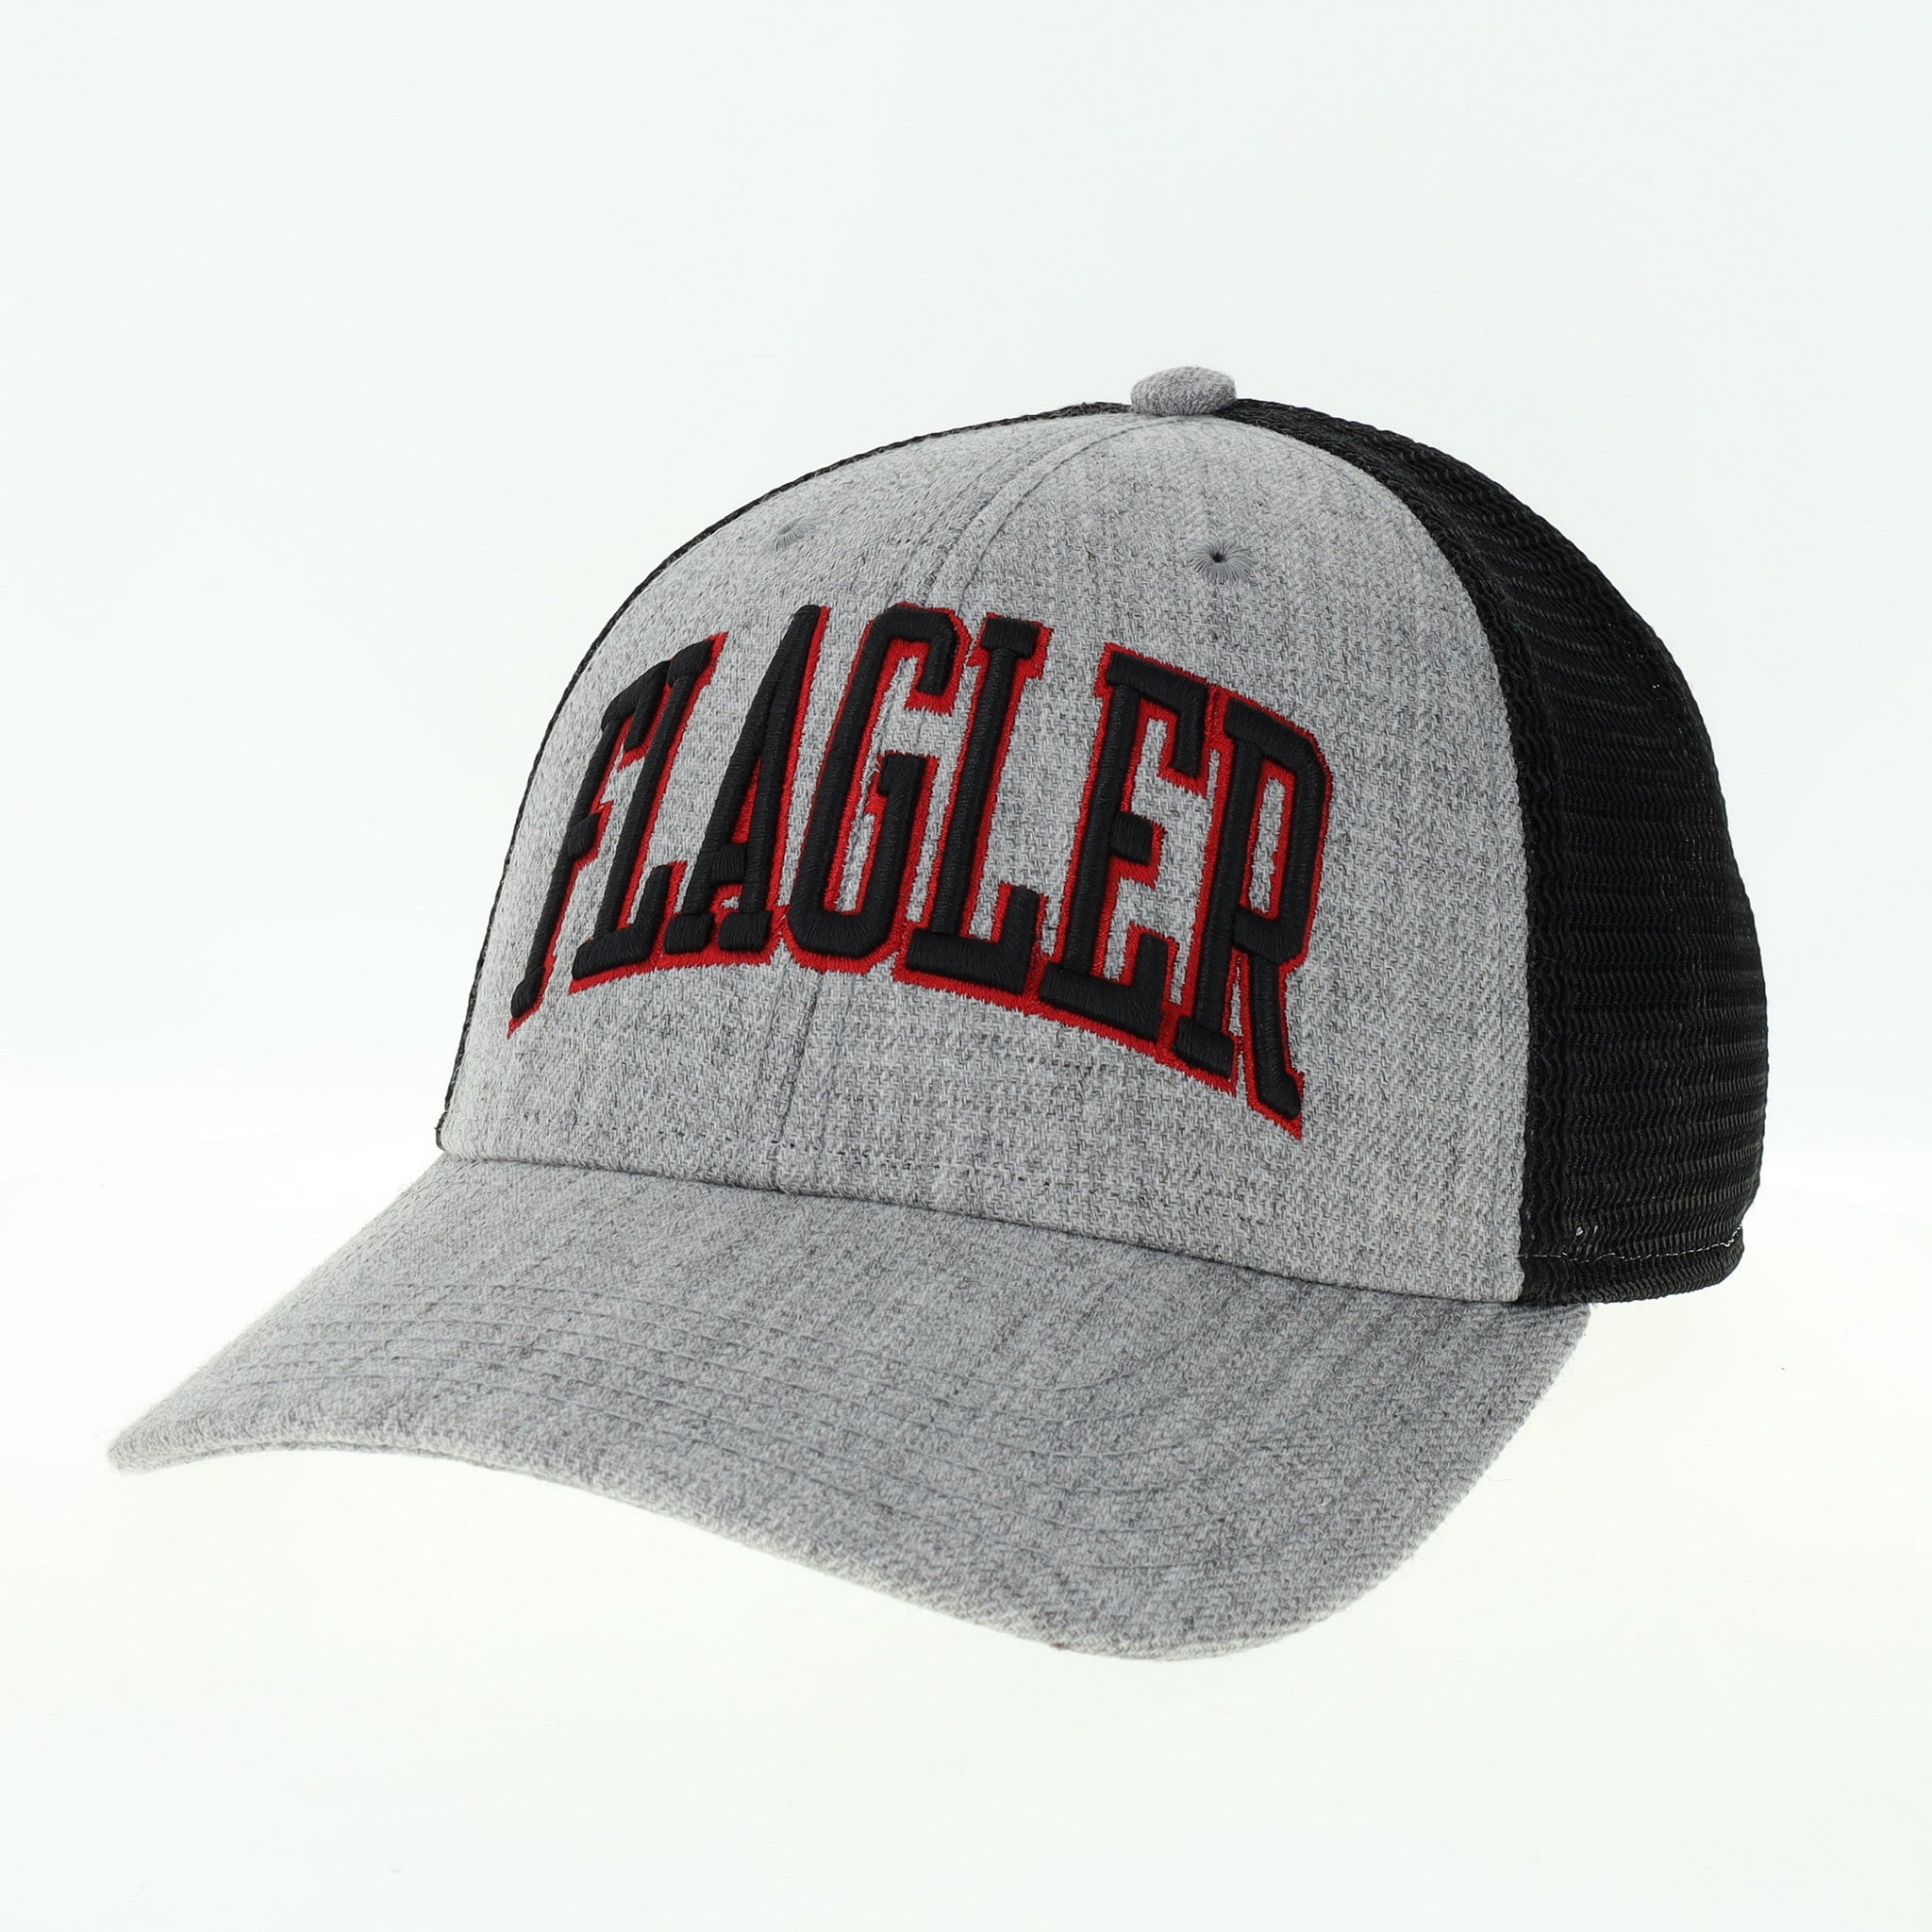 grey hat with black mesh back. Black letter with red outline saying Flagler